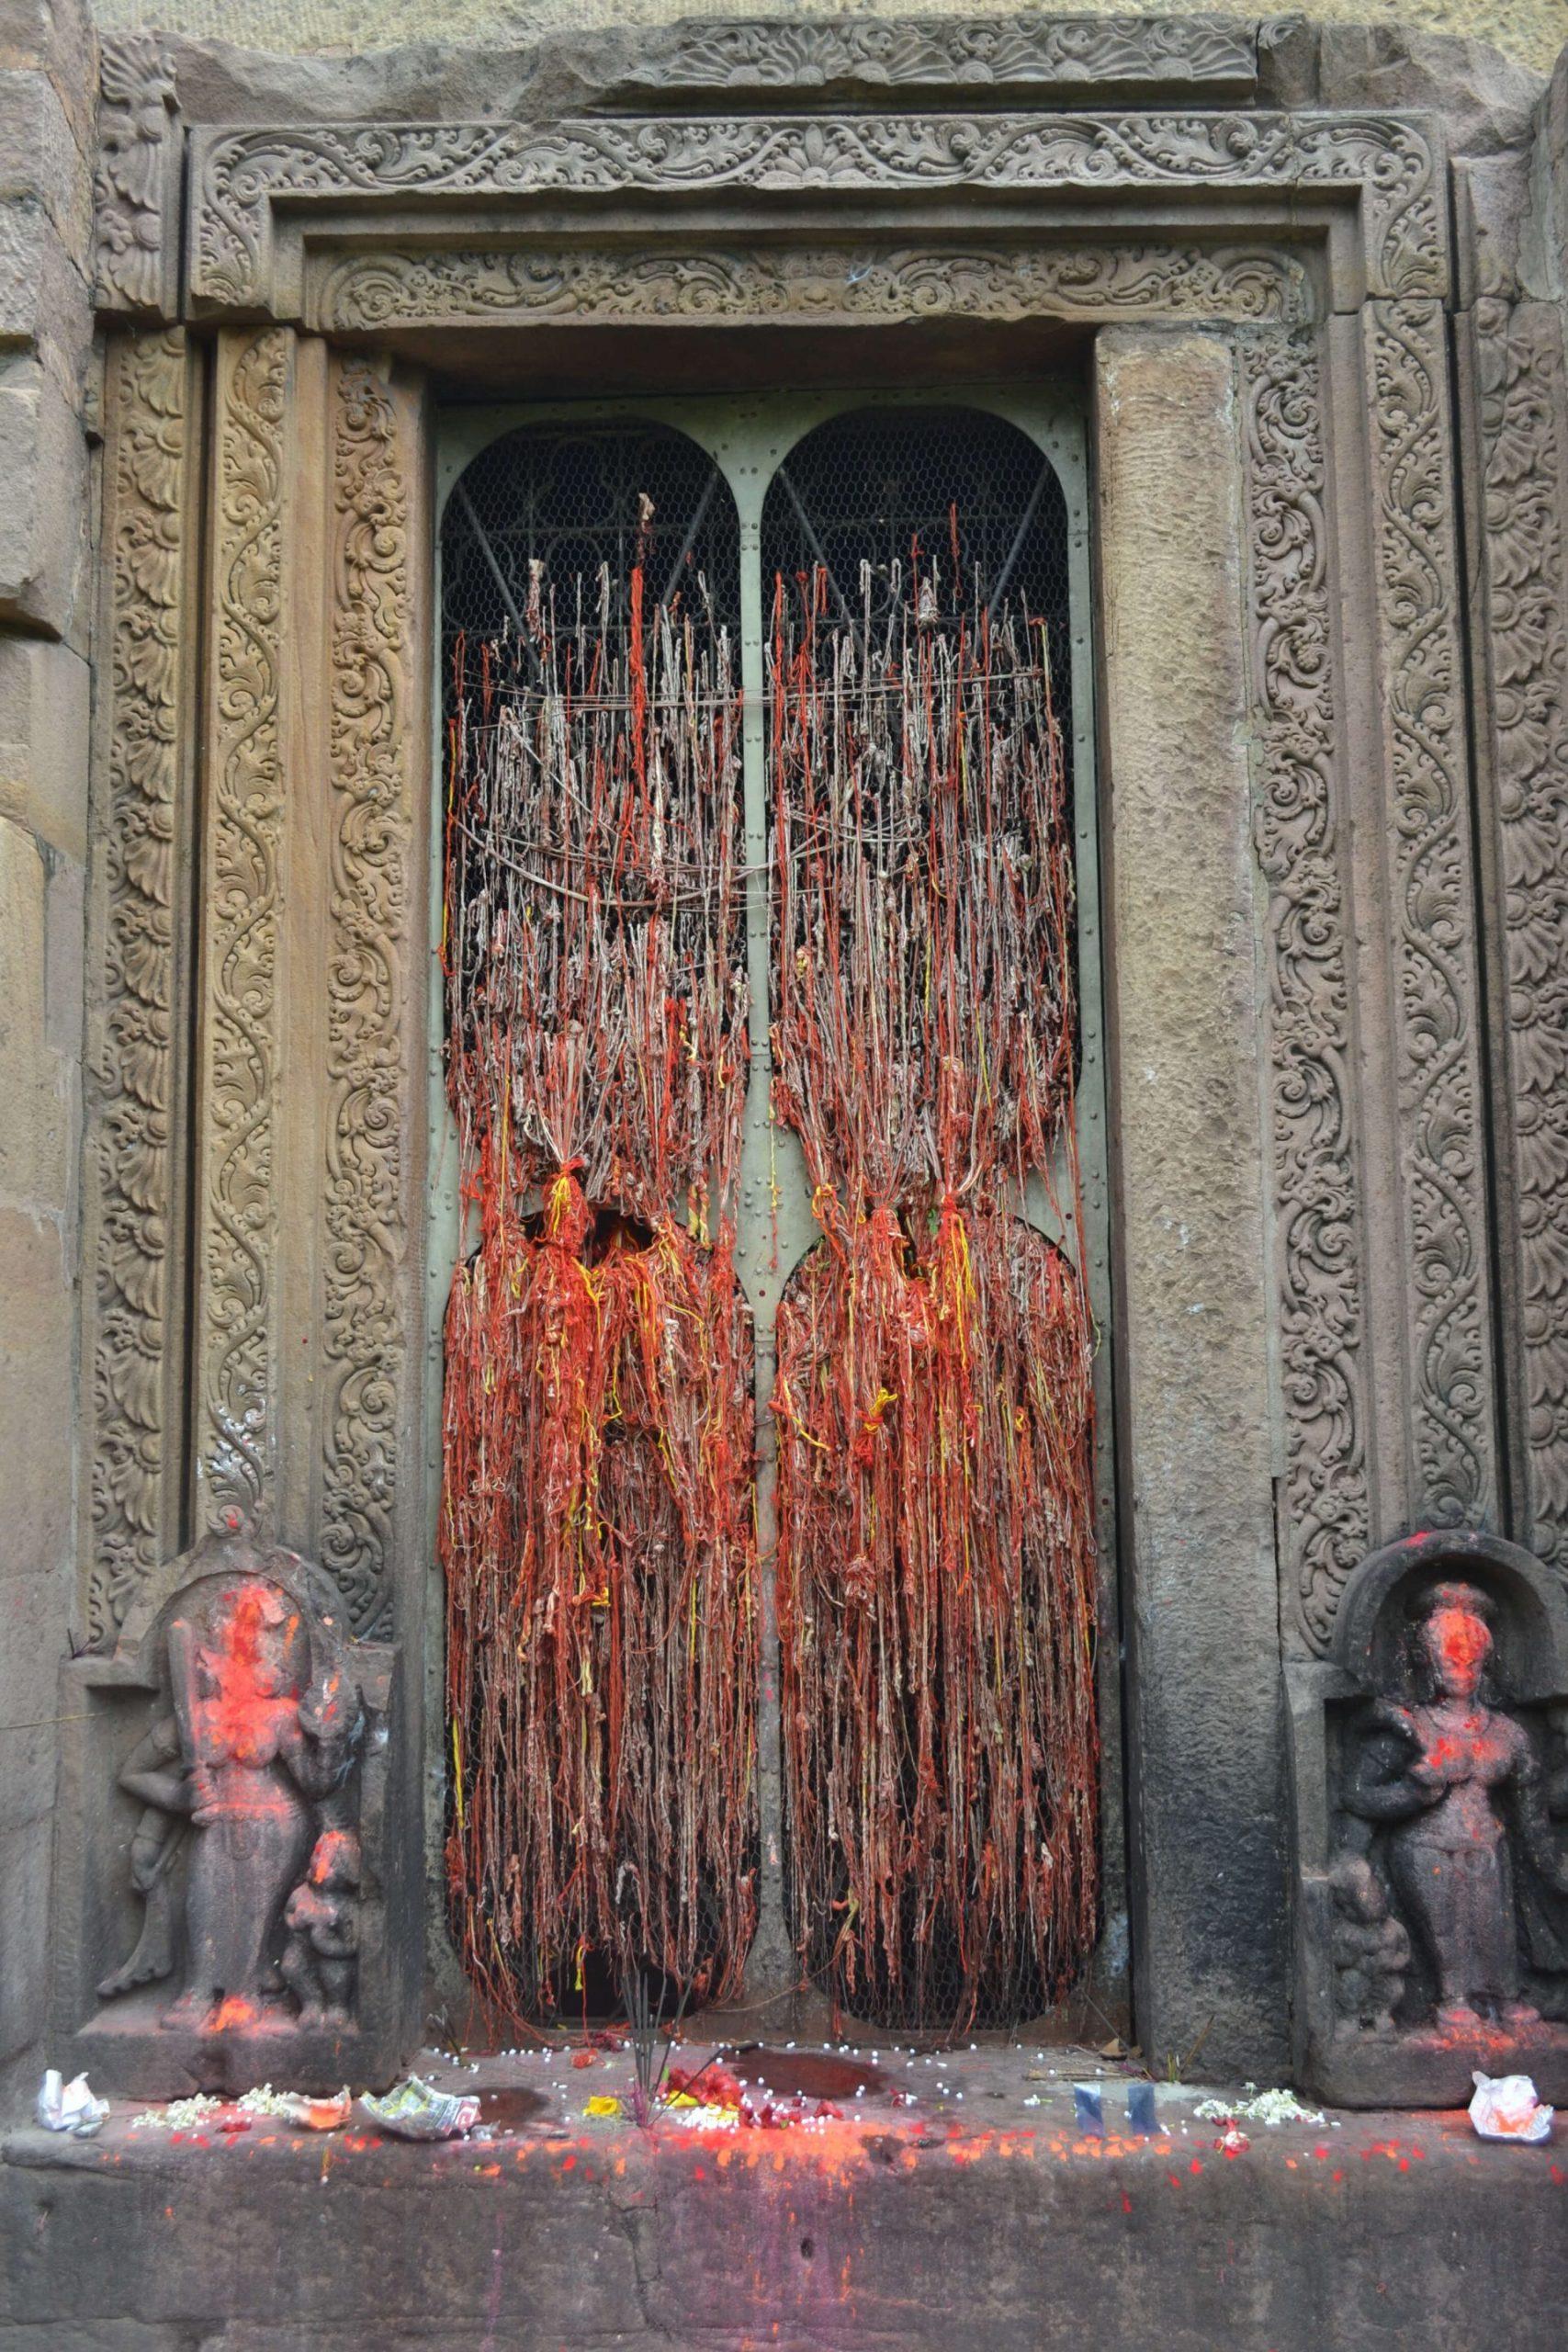 माँ मुंडेश्वरी मंदिर में होते हैं कुछ अनोखे चमत्कार जिसे जानकर आप रह जाएंगे दंग